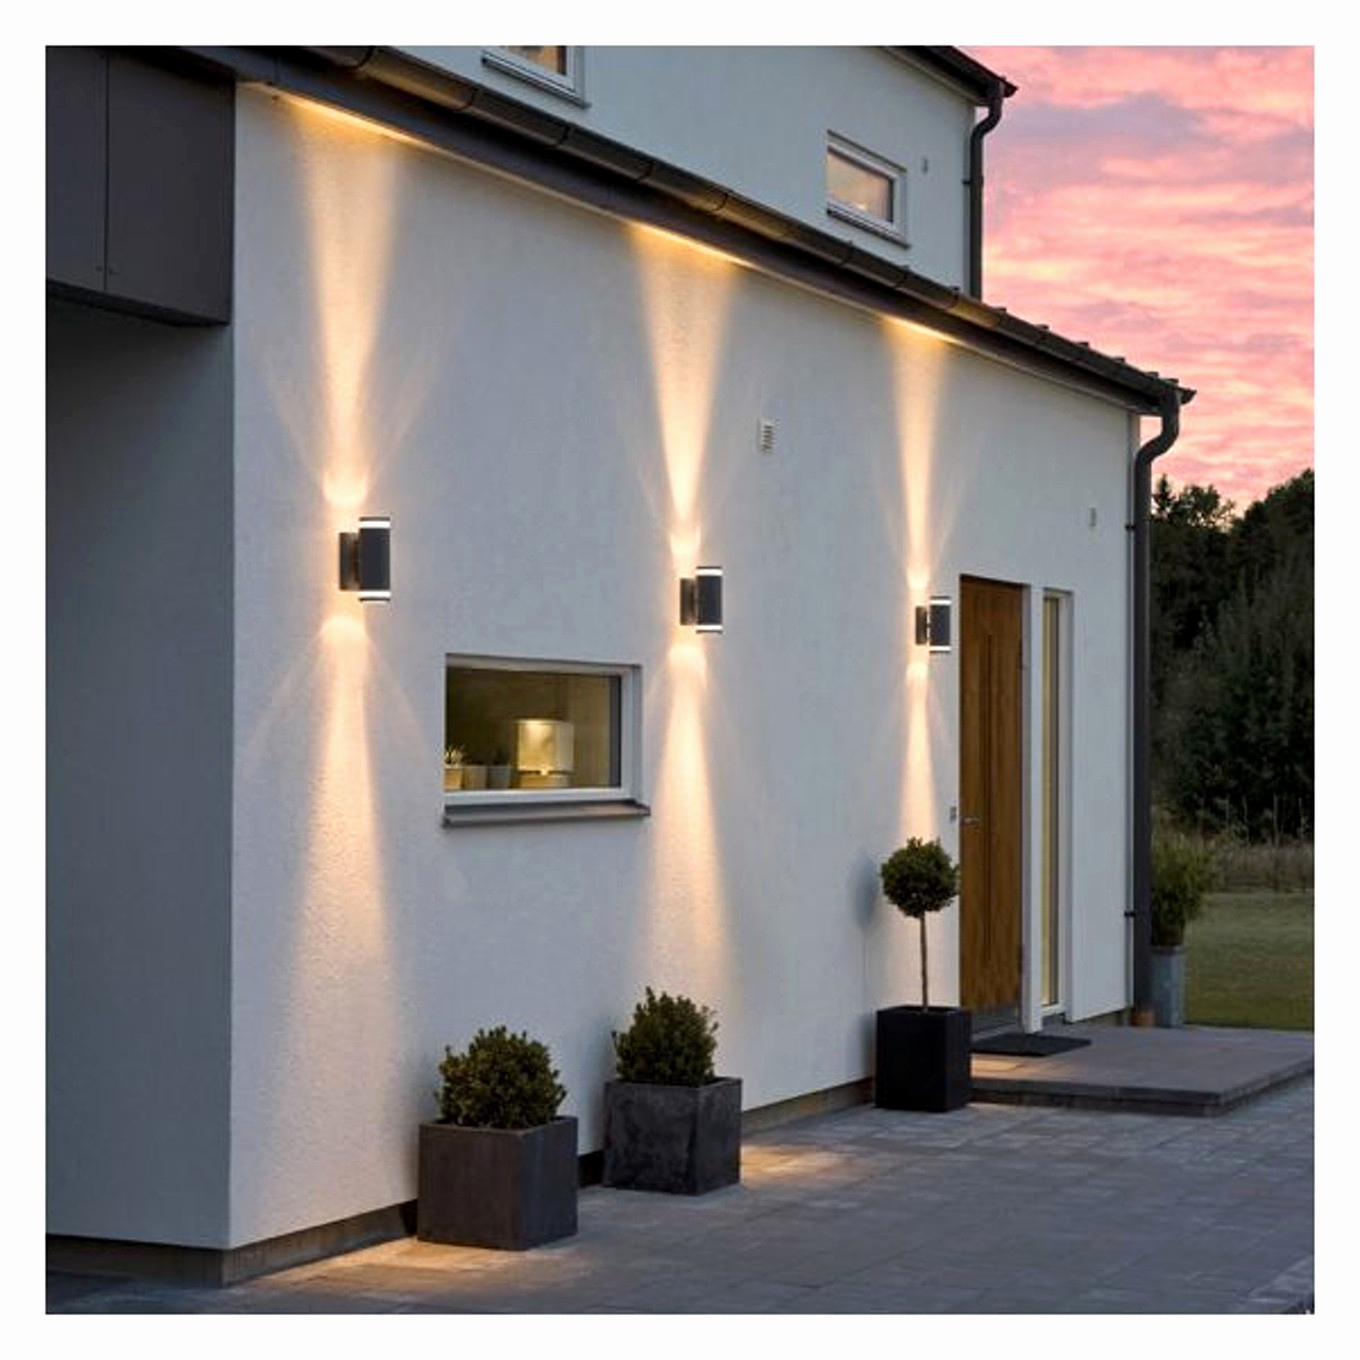 eclairage exterieur castorama inspirant lampe solaire jardin leroy merlin pour luxueux eclairage exterieur of eclairage exterieur castorama